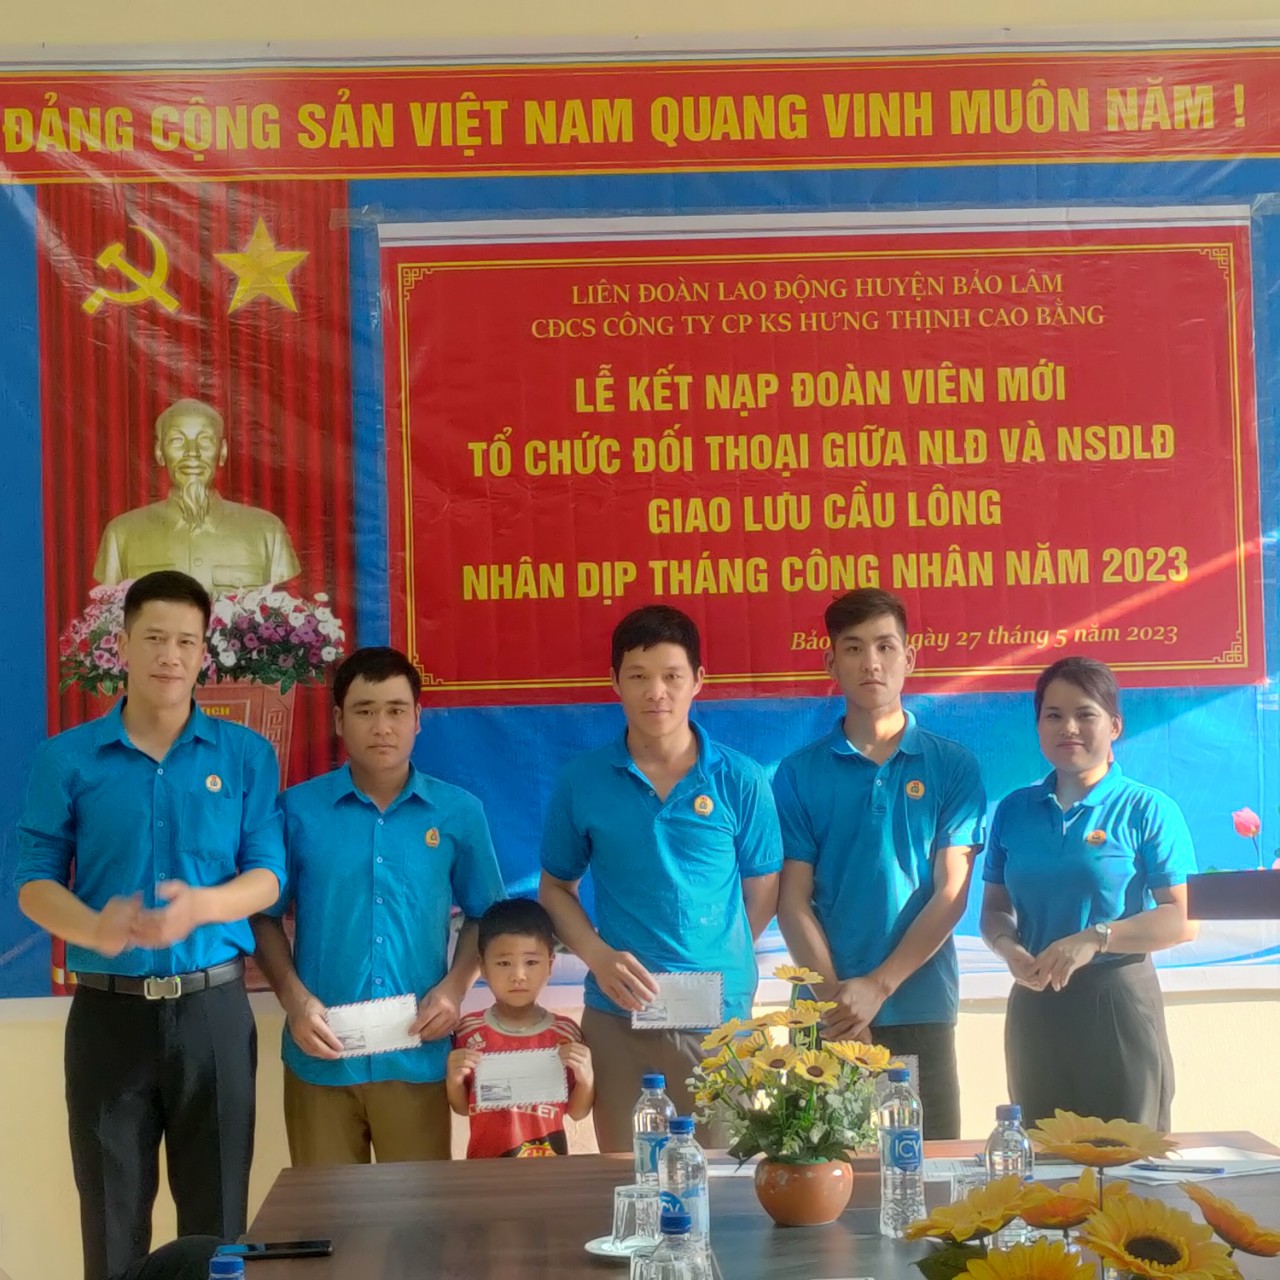 ĐC Lã Văn Huấn Phó chủ tịch LĐLĐ huyện Bảo Lâm trao quà cho các ĐVCĐ có Hoàn cảnh khó khăn nhân dịp tháng Công nhân